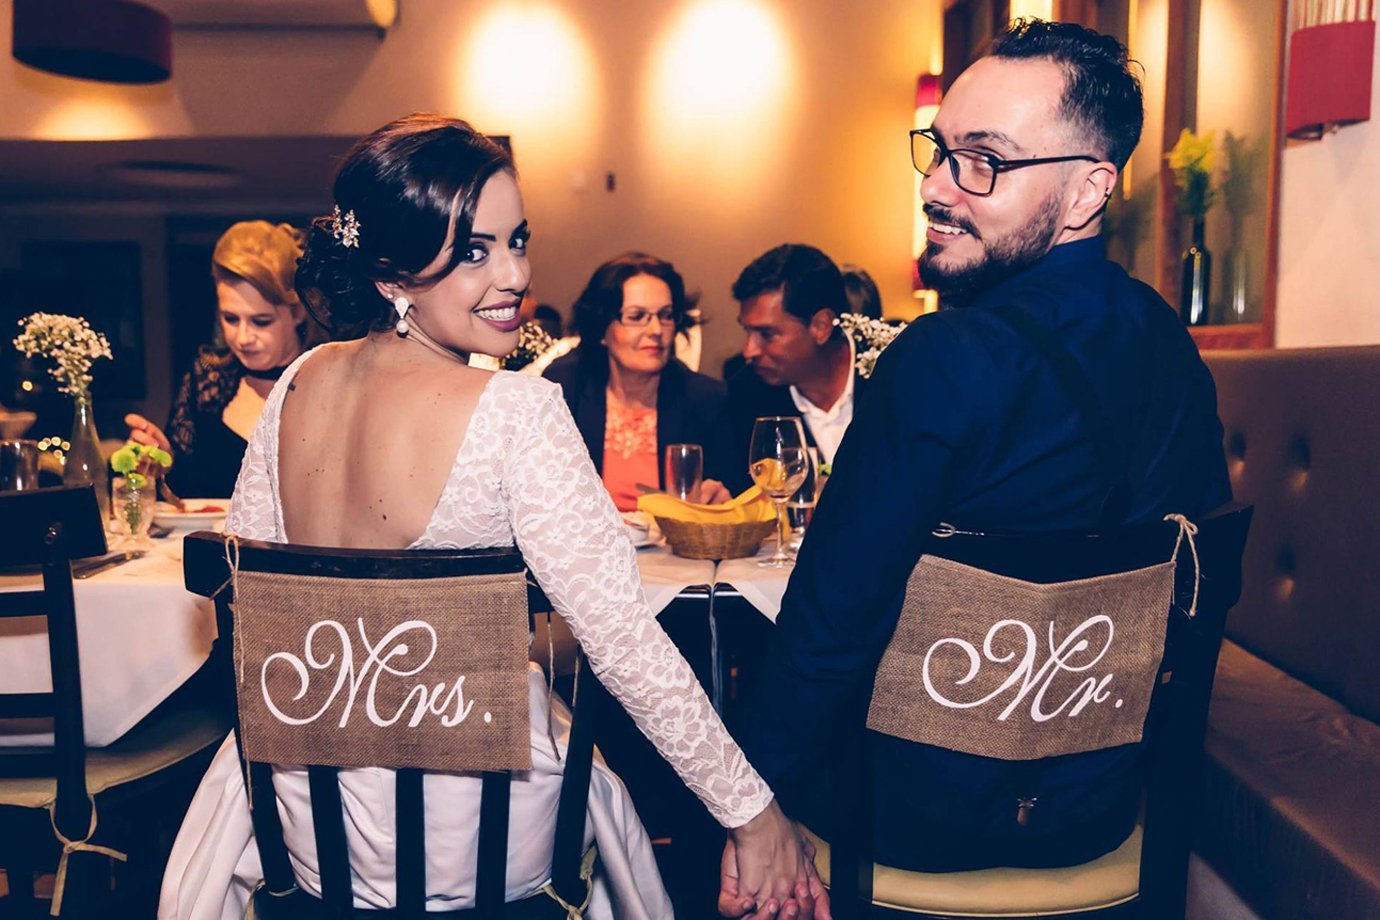 A publicitária Camilla Fernandes Horizonte, 32 anos, e o designer Wesley Horizonte, 32 anos, em seu casamento em um restaurante de São Paulo